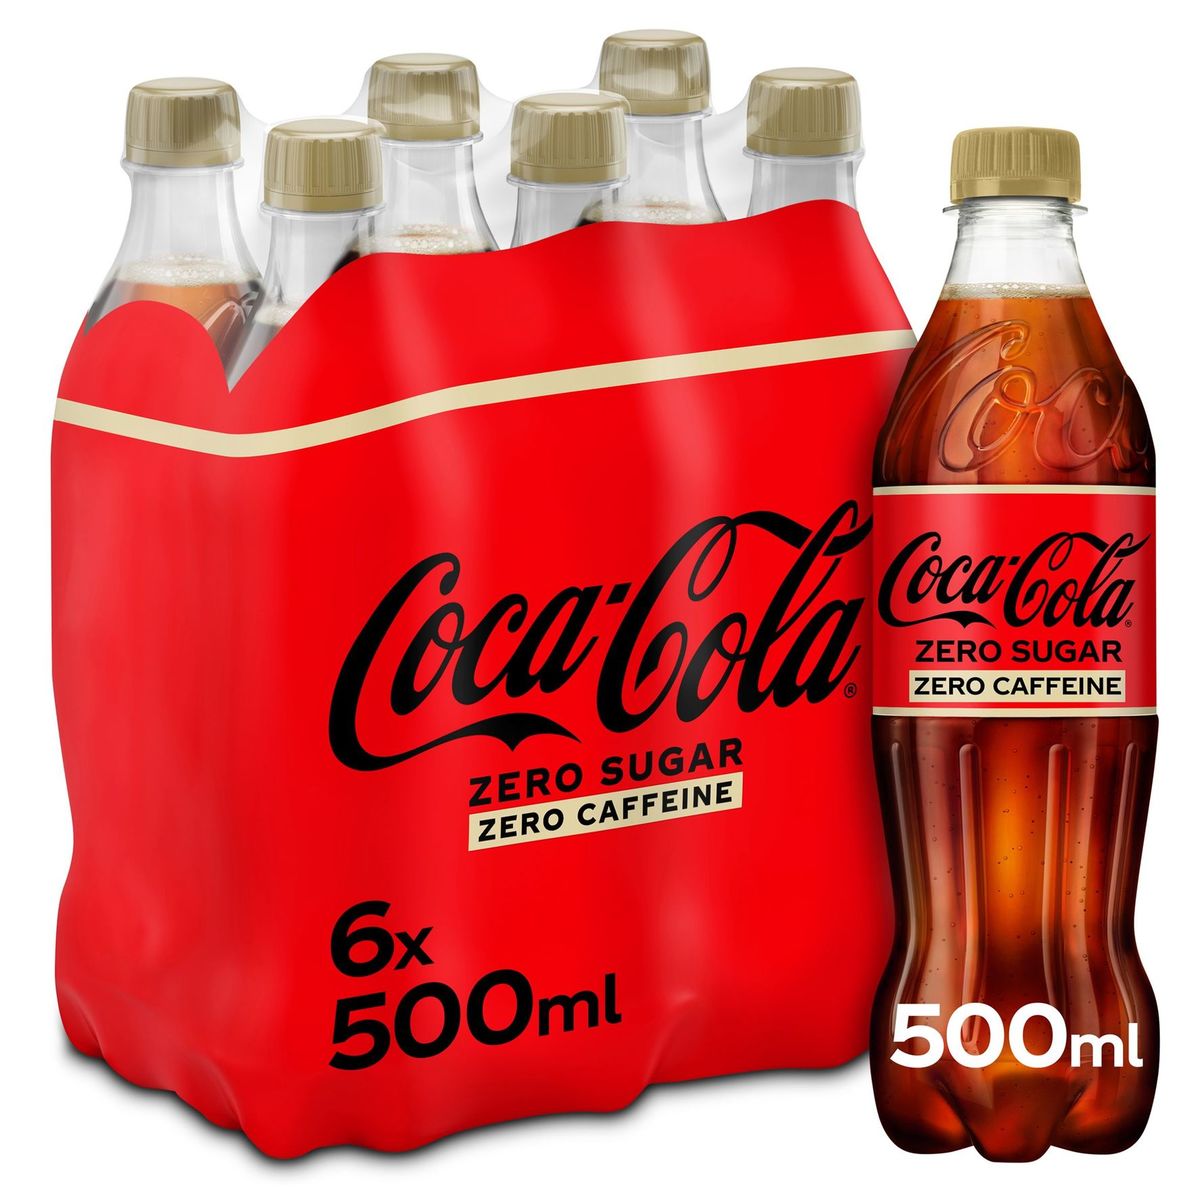 Coca-Cola Zero Sugar Zero Caffeine Coke Soft drink 6 x 500 ml